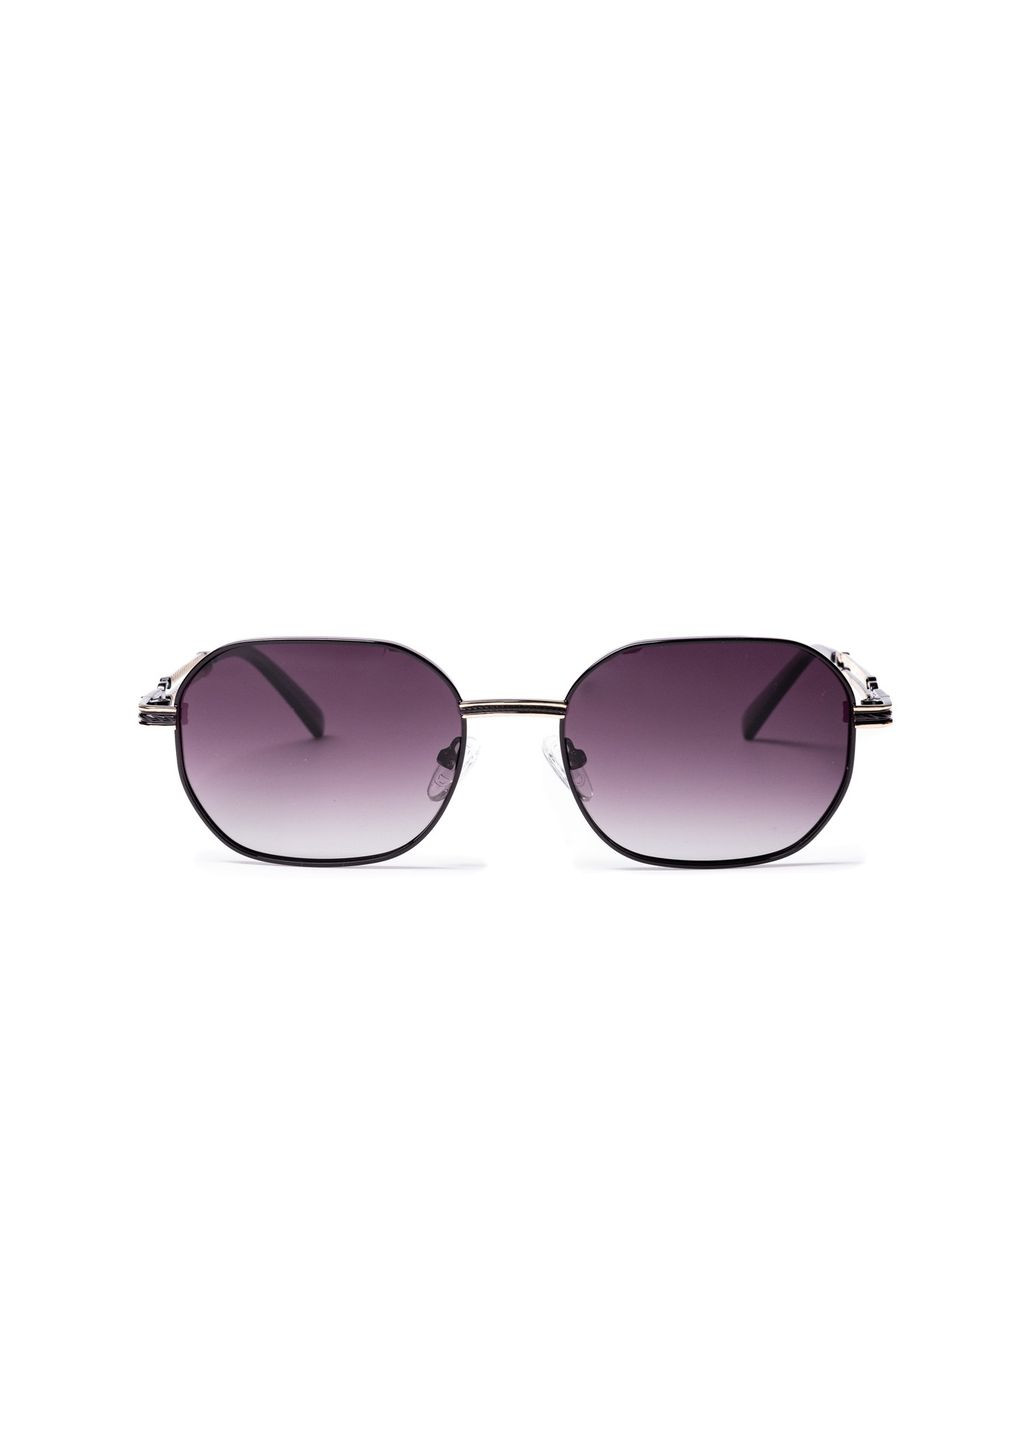 Солнцезащитные очки с поляризацией Фэшн-классика мужские 378-438 LuckyLOOK 378-438м (289359619)